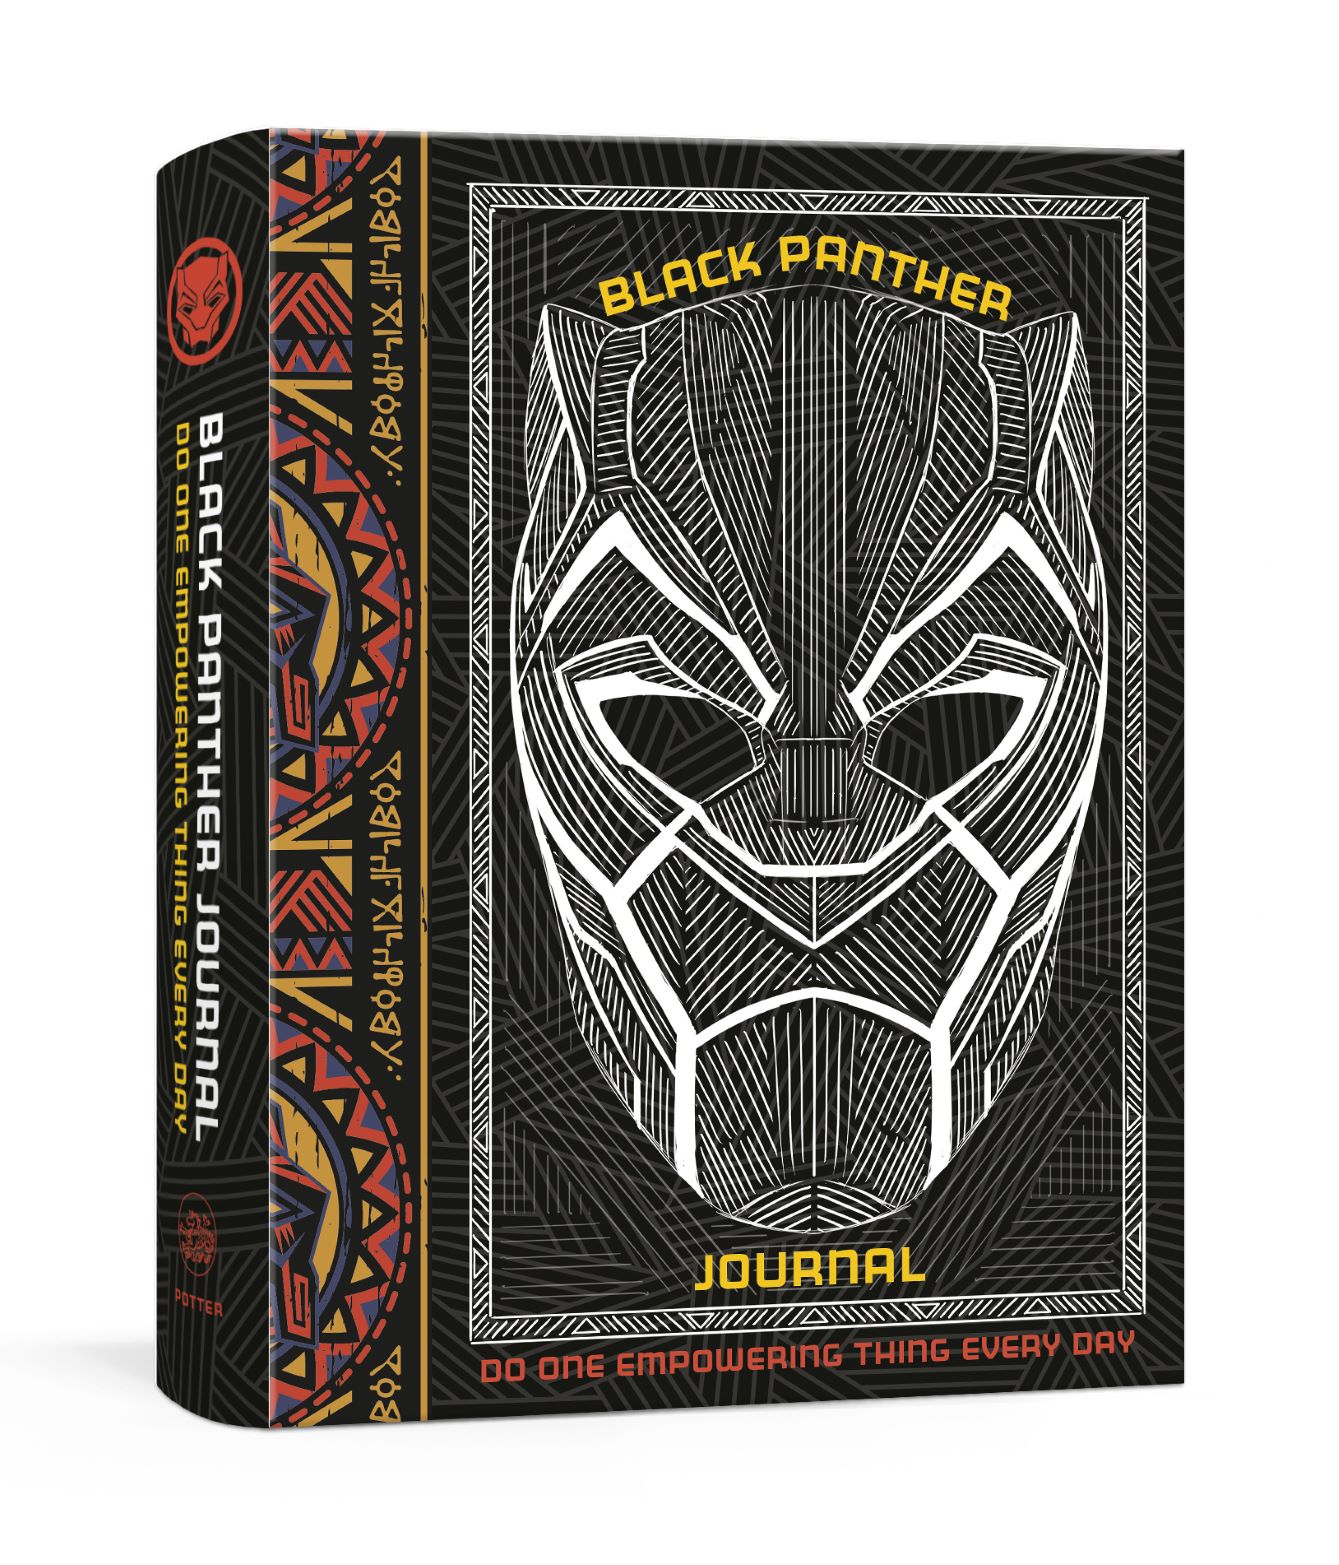 Black Panther Journal